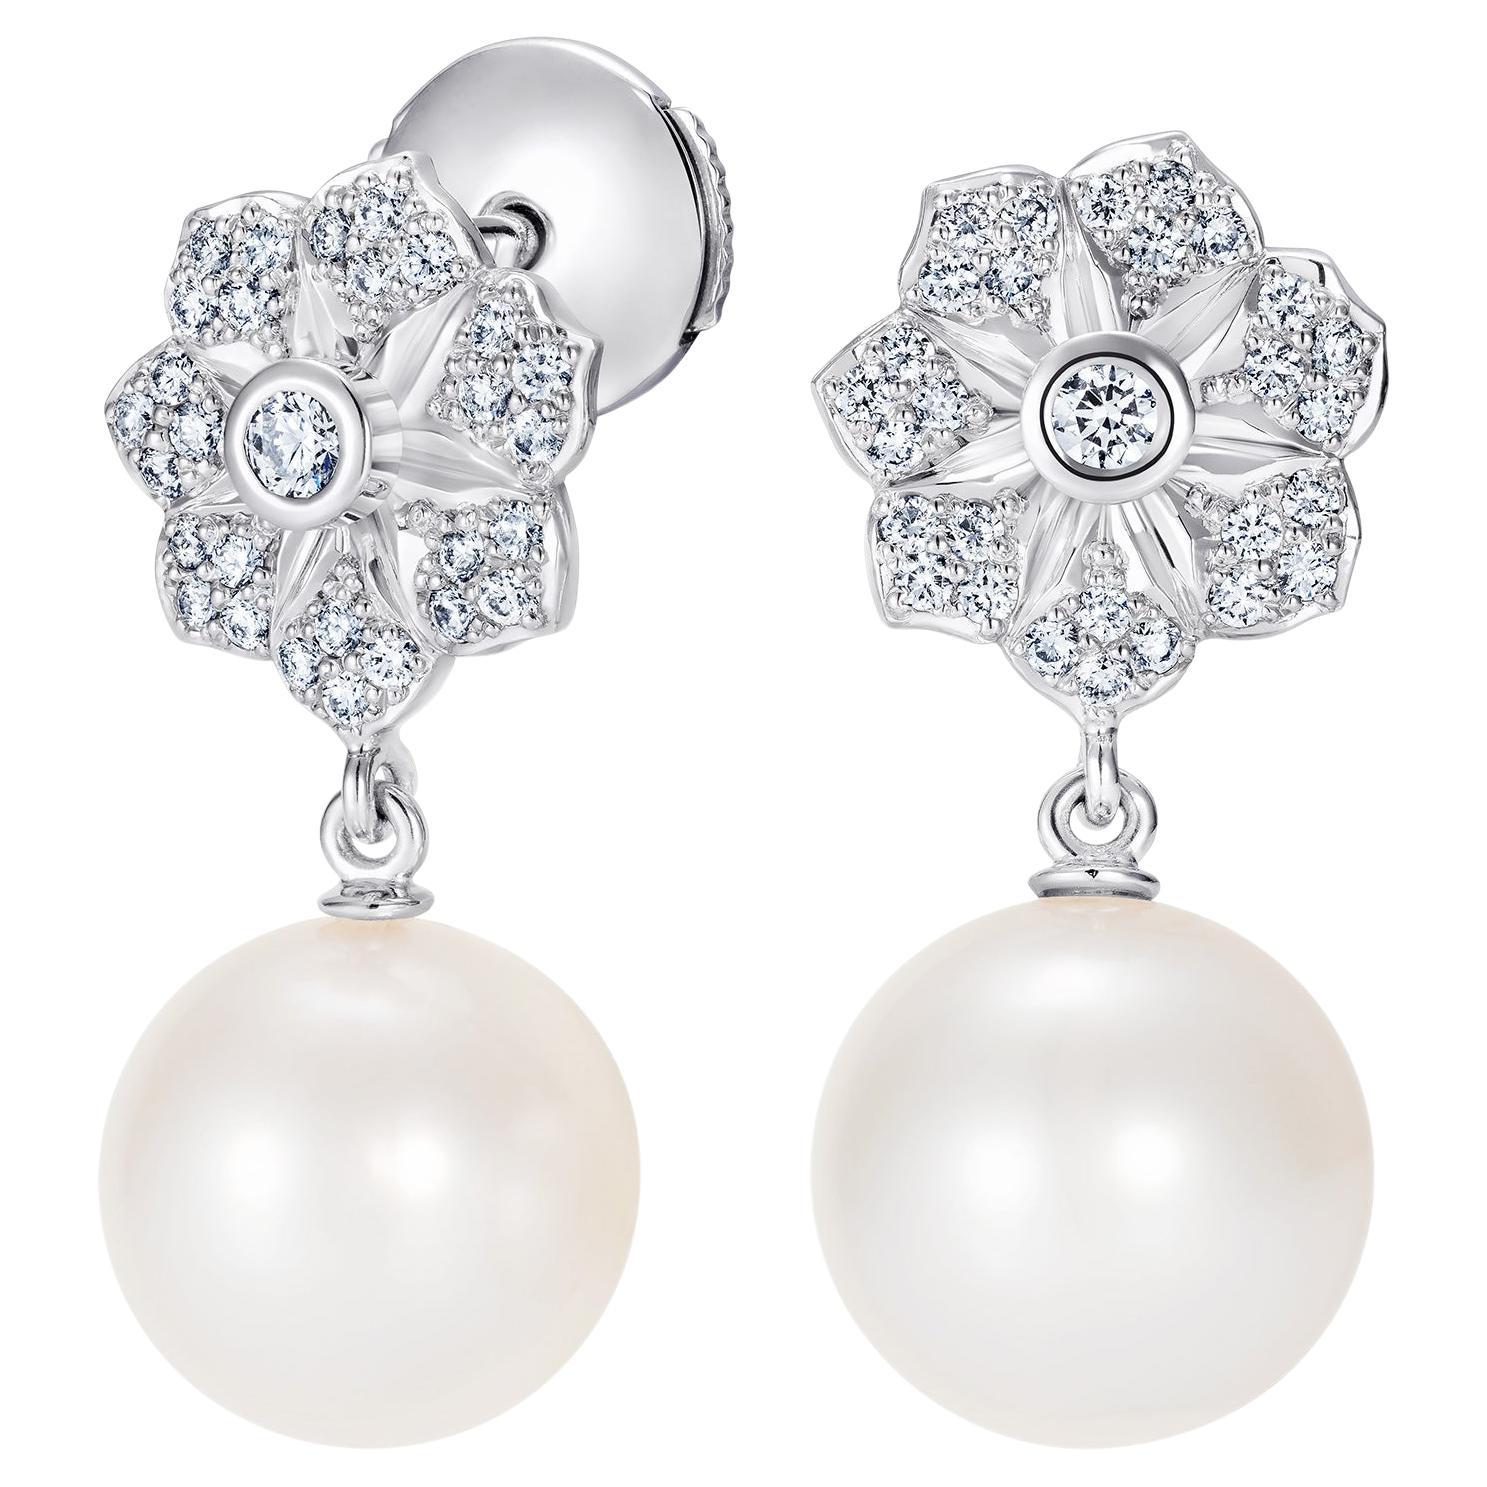 Hirsh Wildflower White Pearl and Diamond Earrings